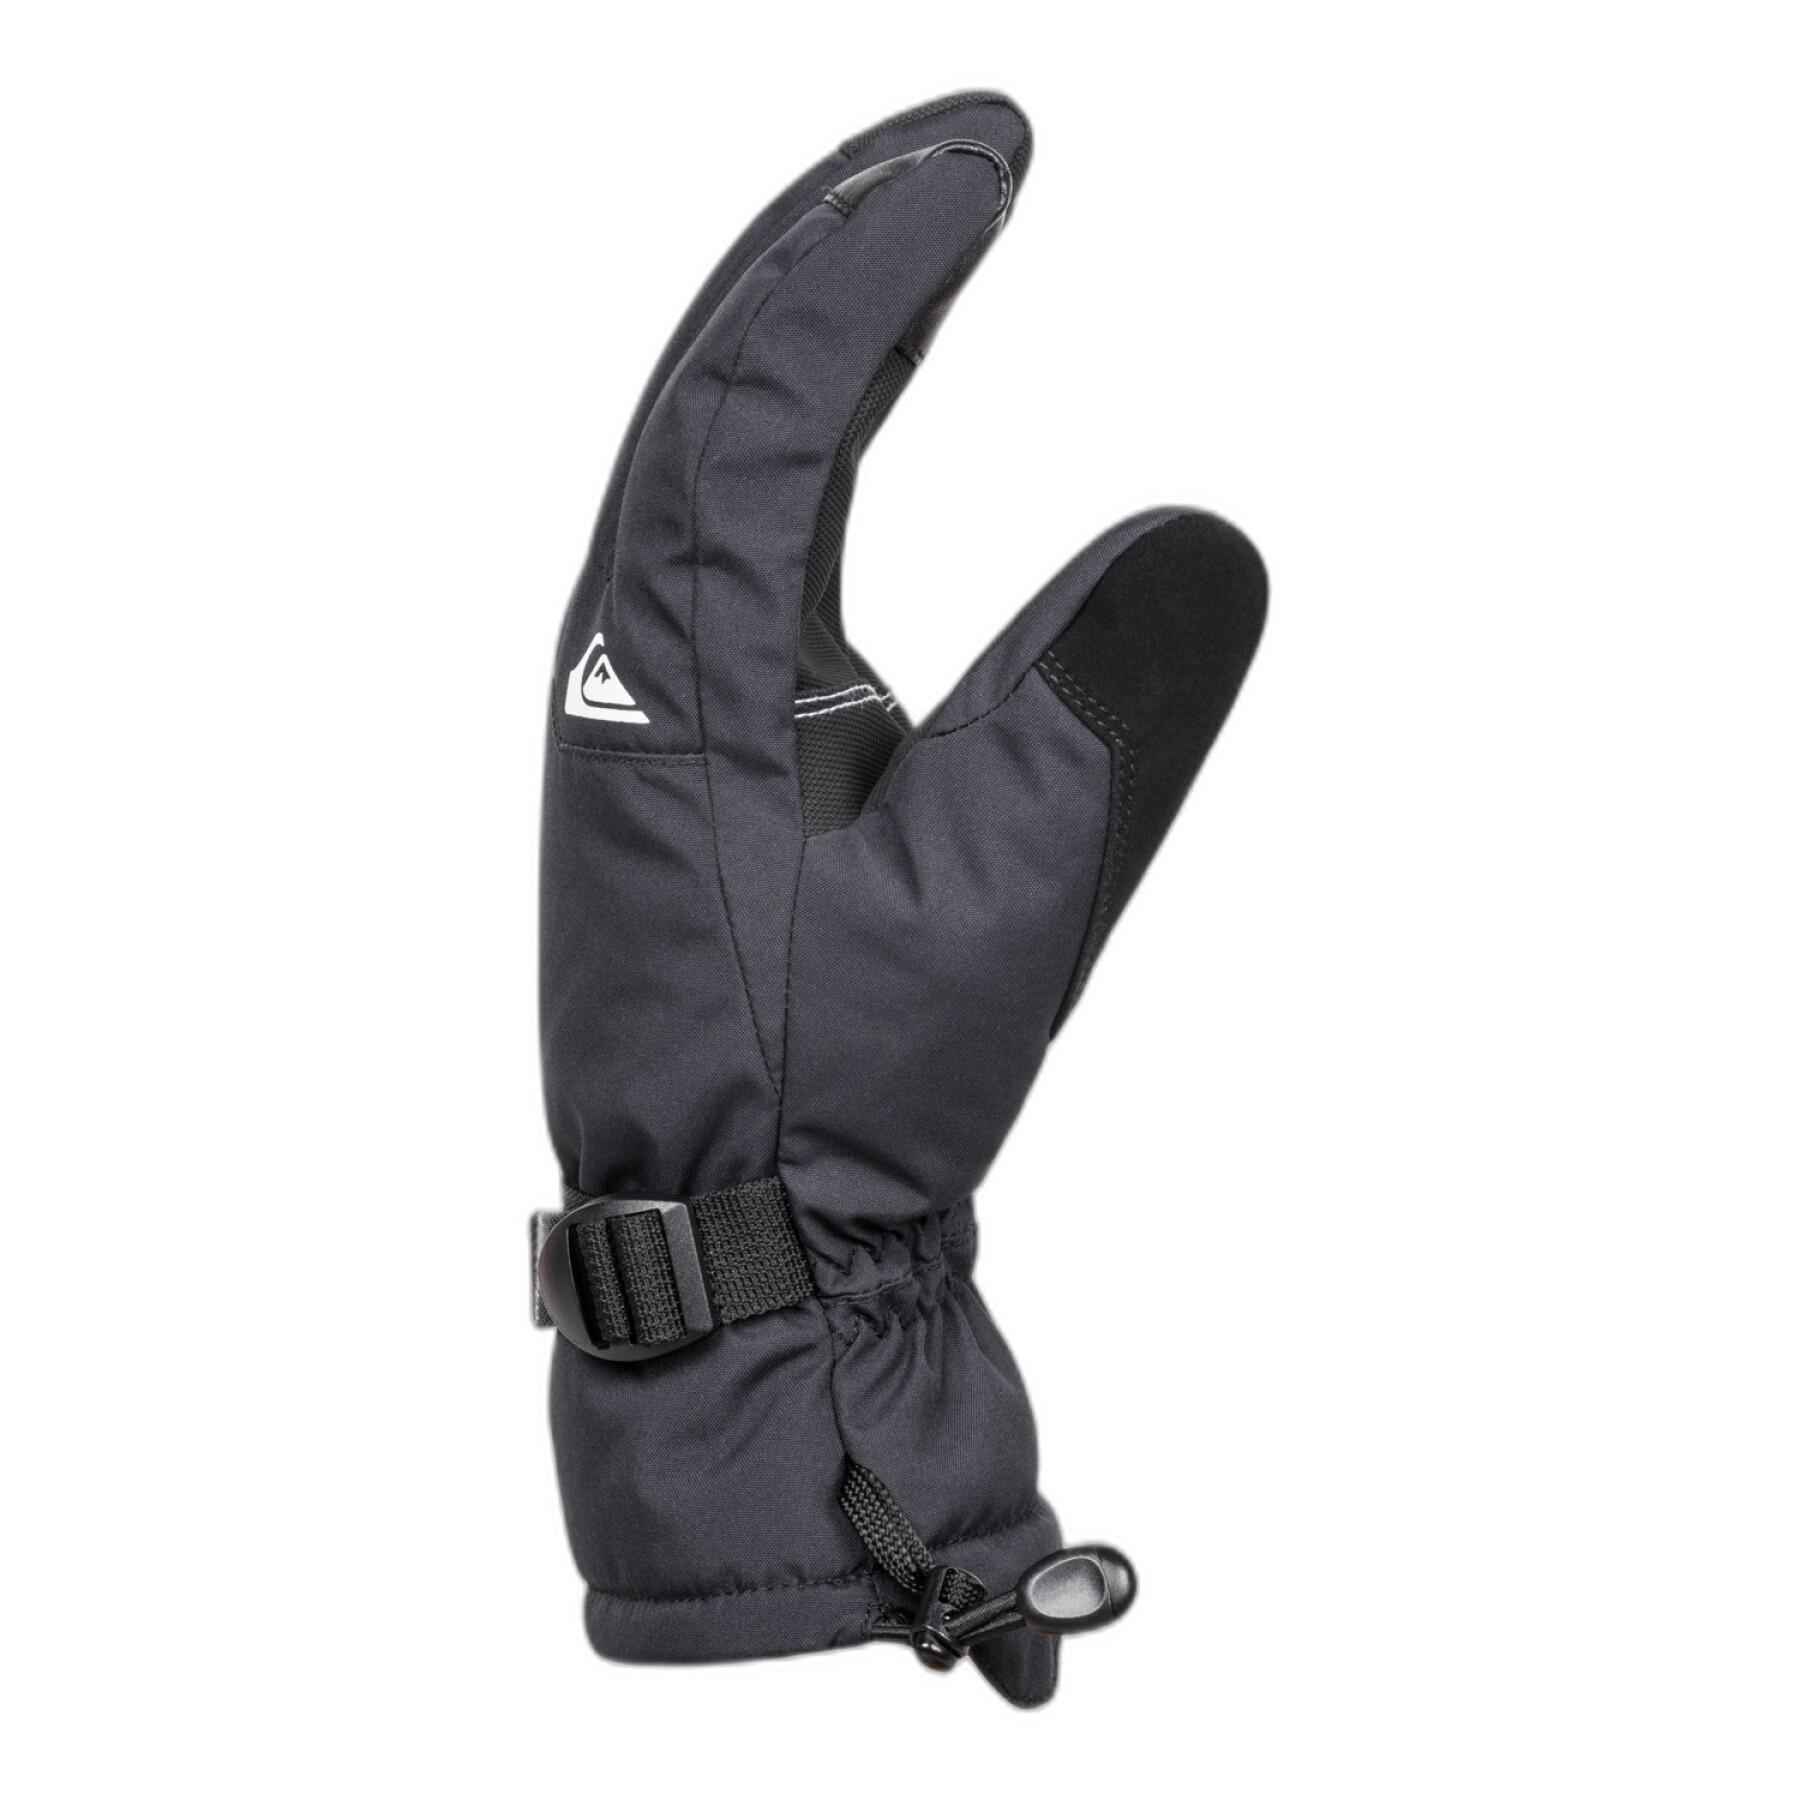 Handskar för skidor/snowboard Quiksilver Mission